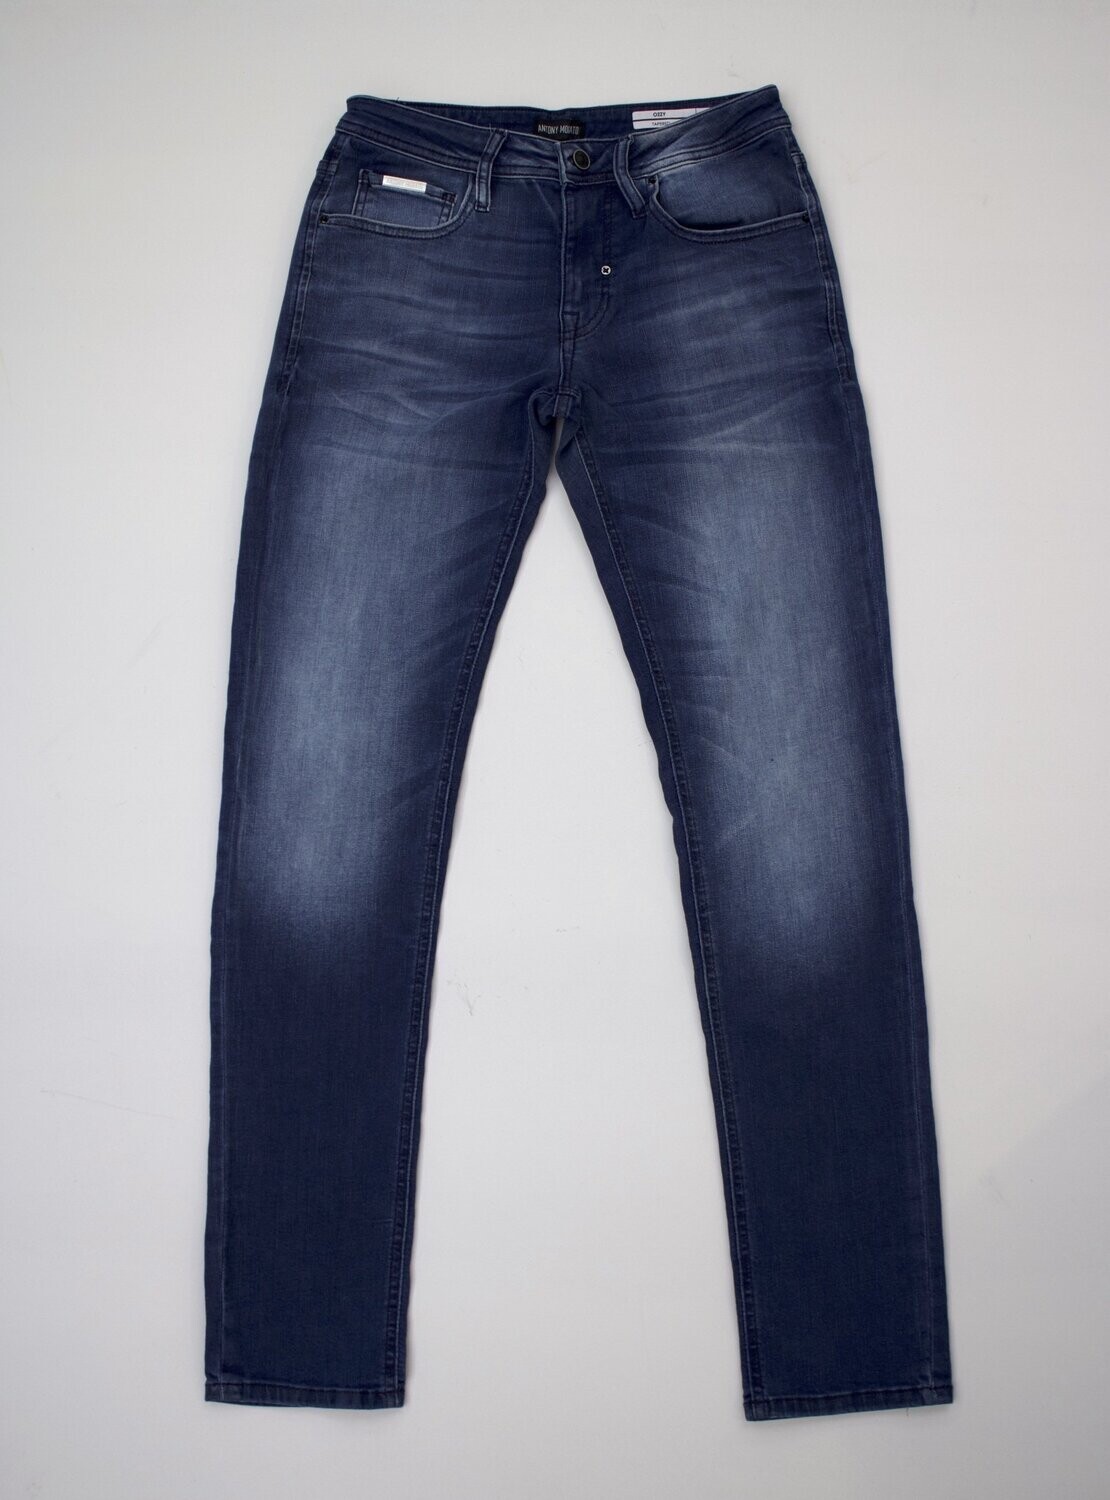 Antony Morato "OZZY" blue skinny jeans